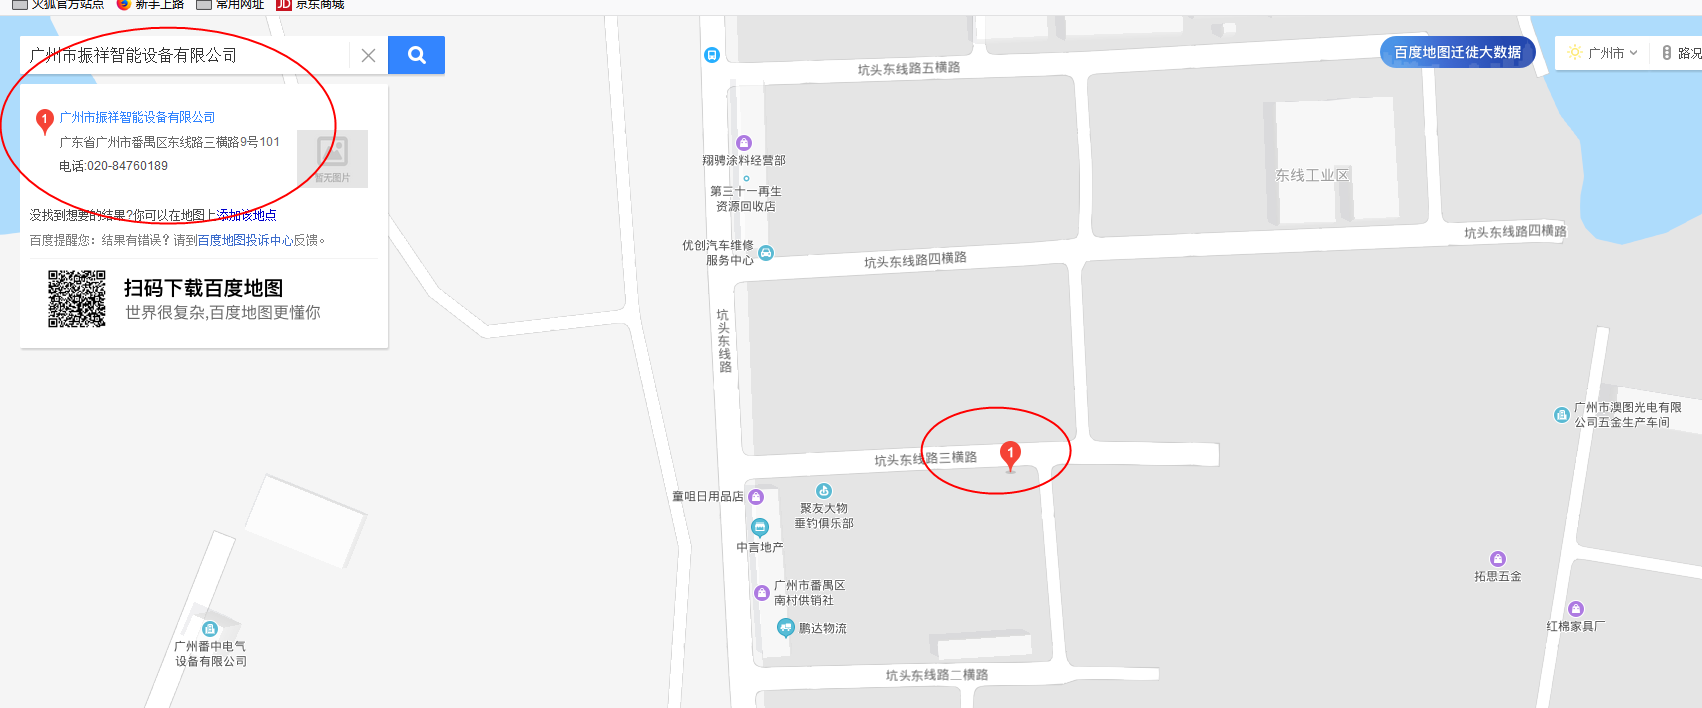 廣州市振祥智能設備有限公司(圖1)